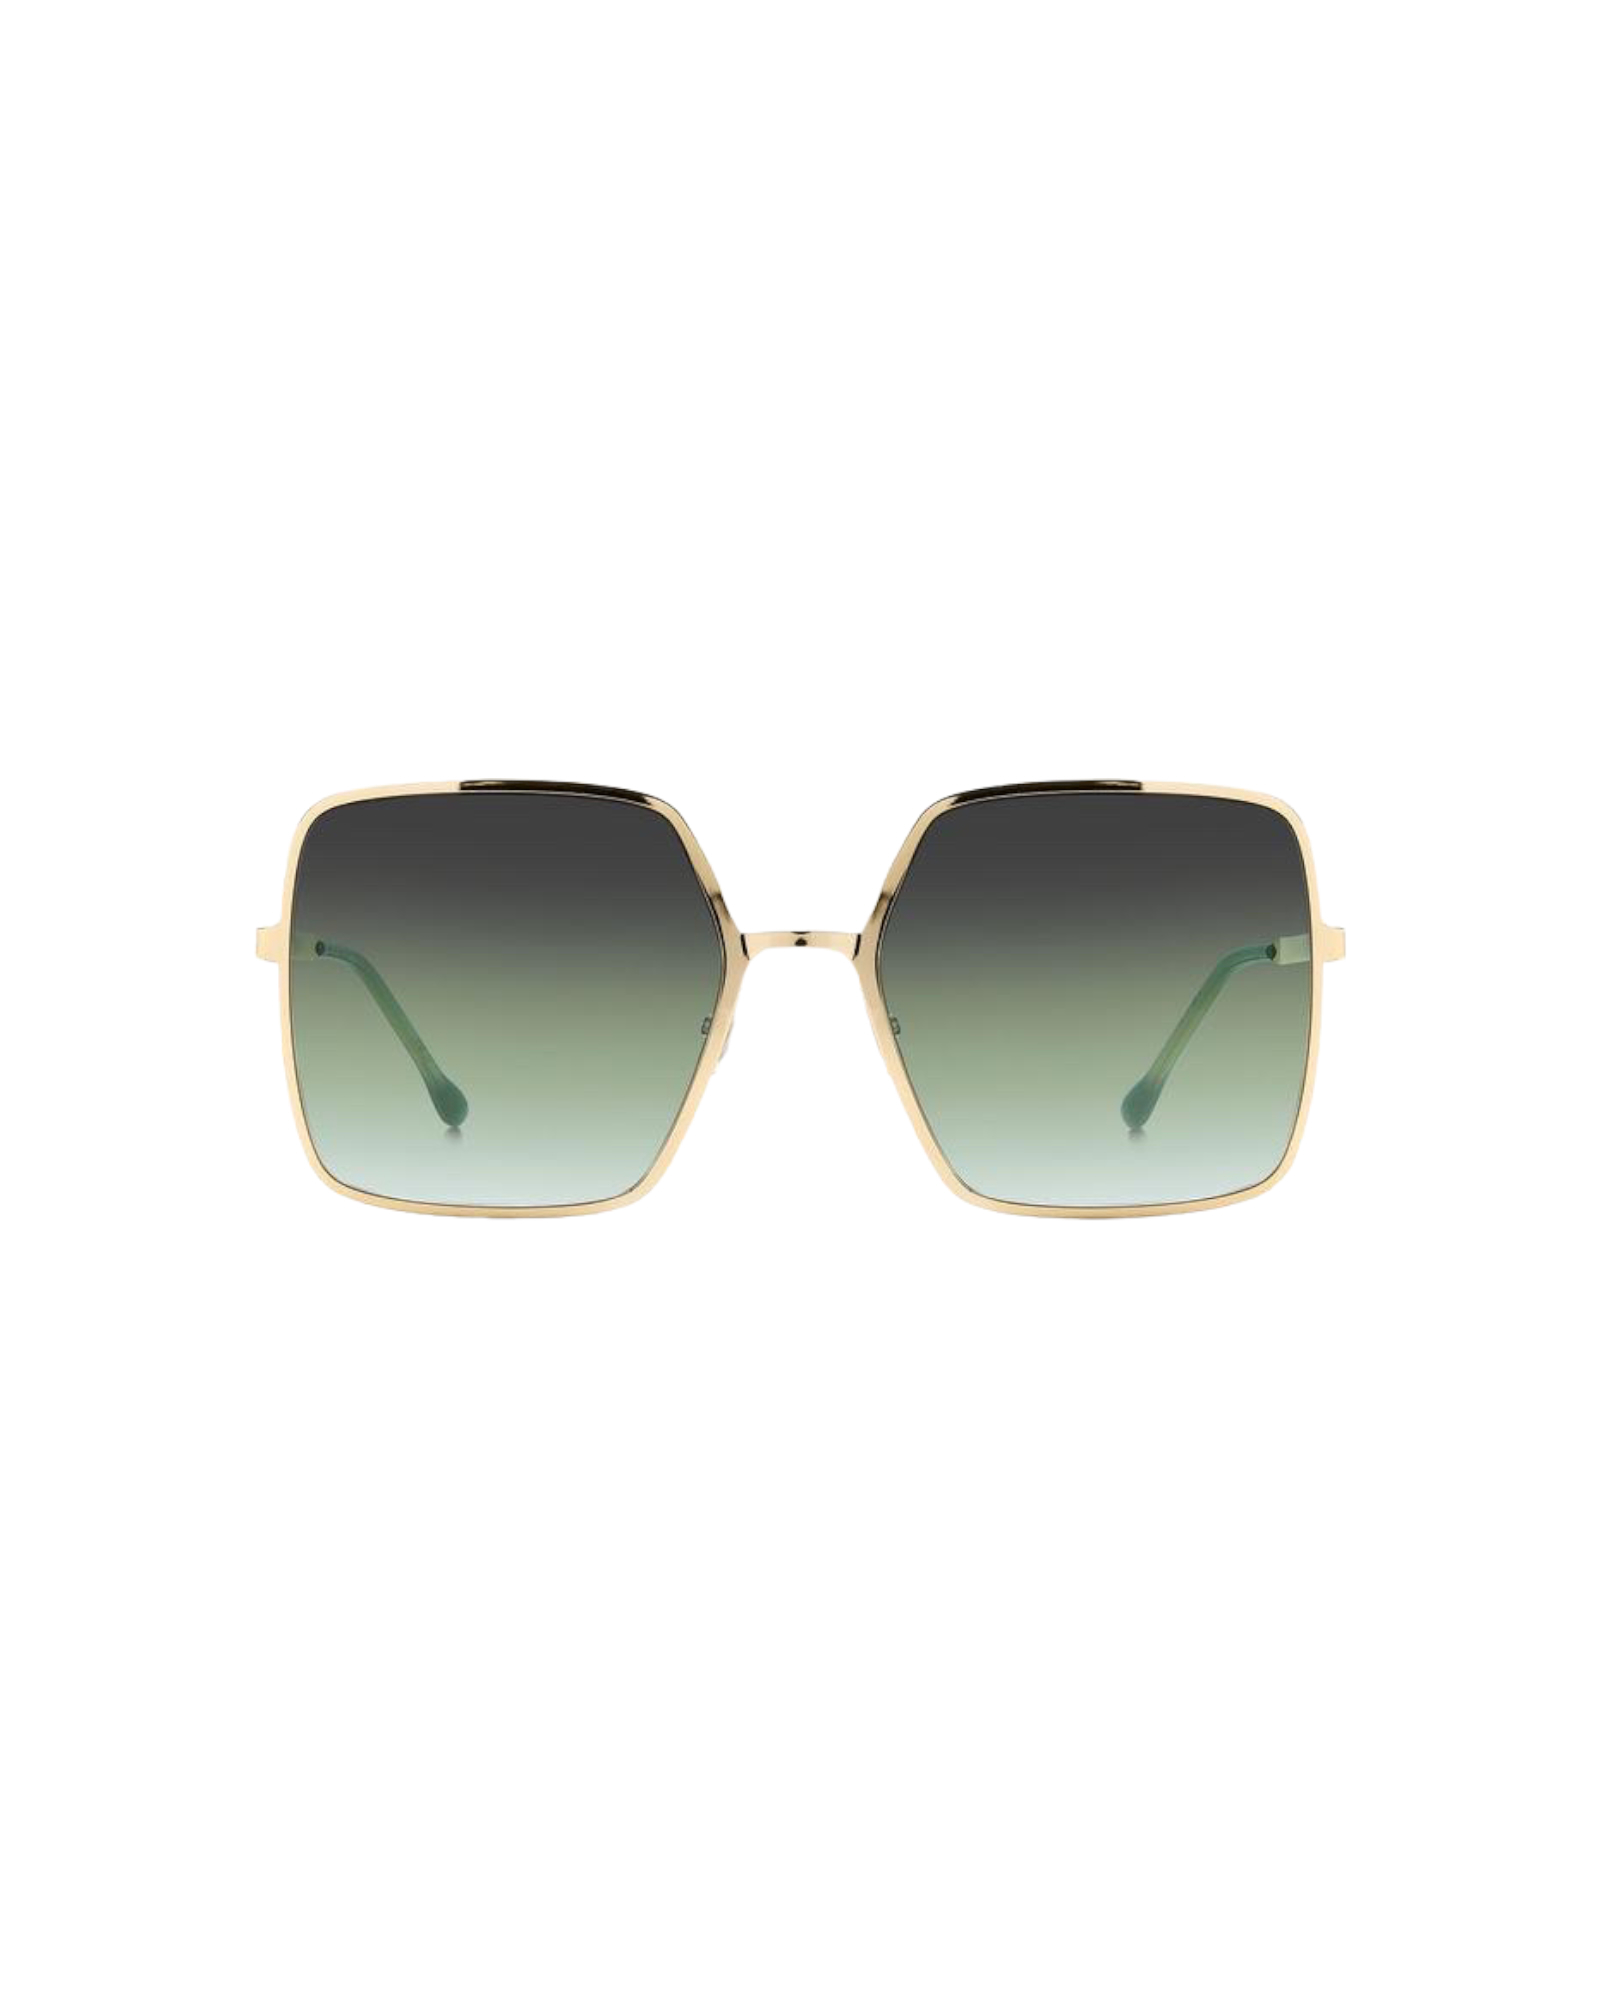 Sonnenbrille, Zuko, green, ISABEL MARANT, IM 0102/S